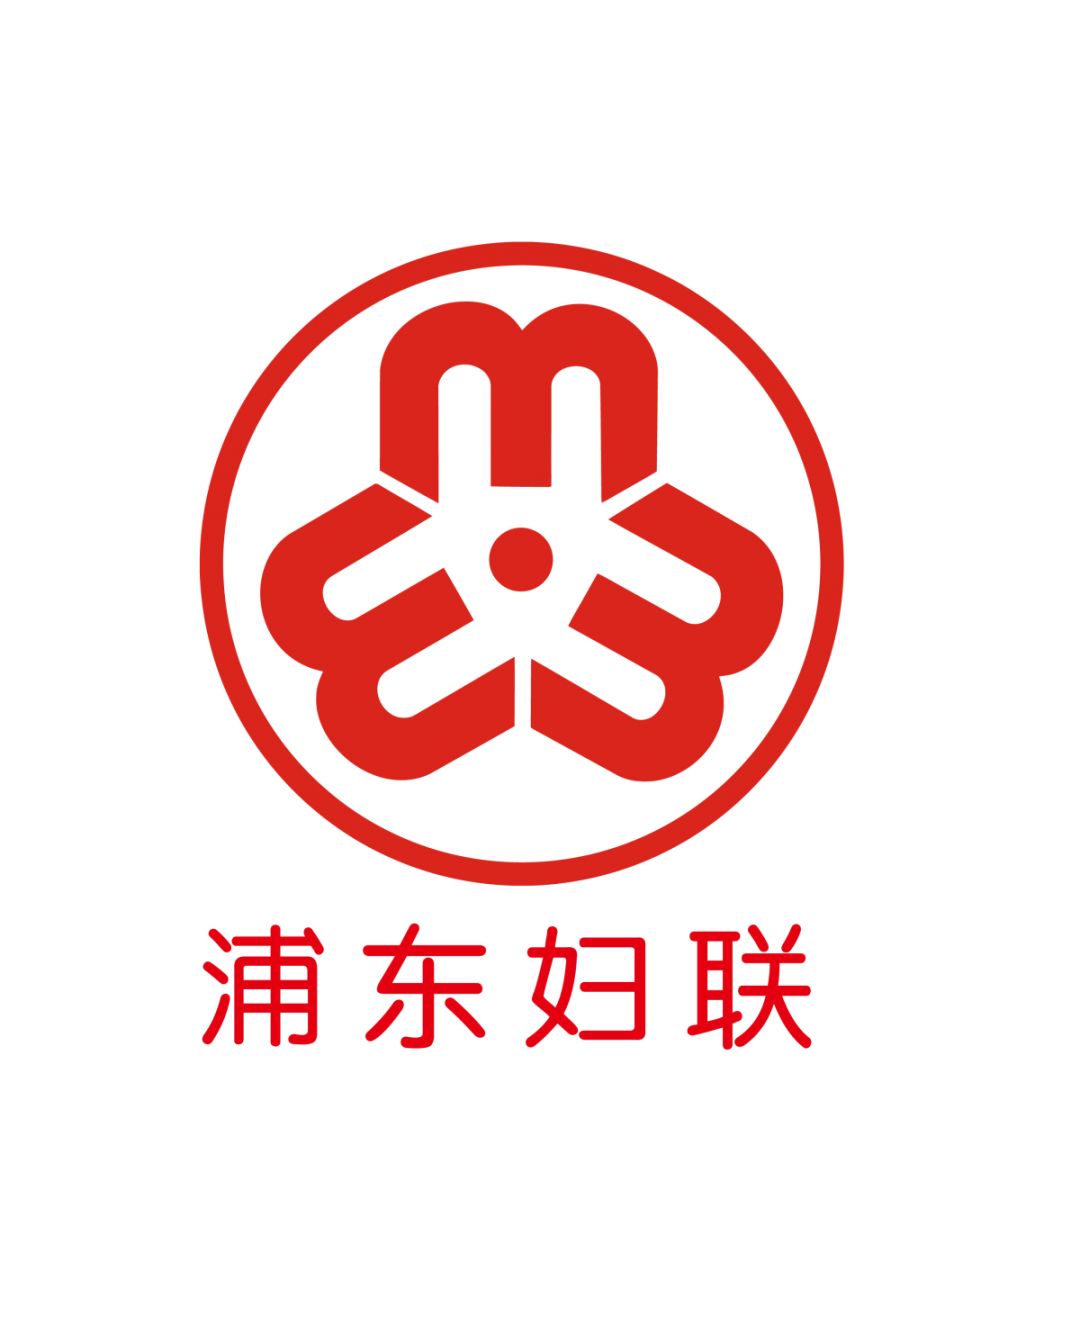 妇联标志性logo会徽图片